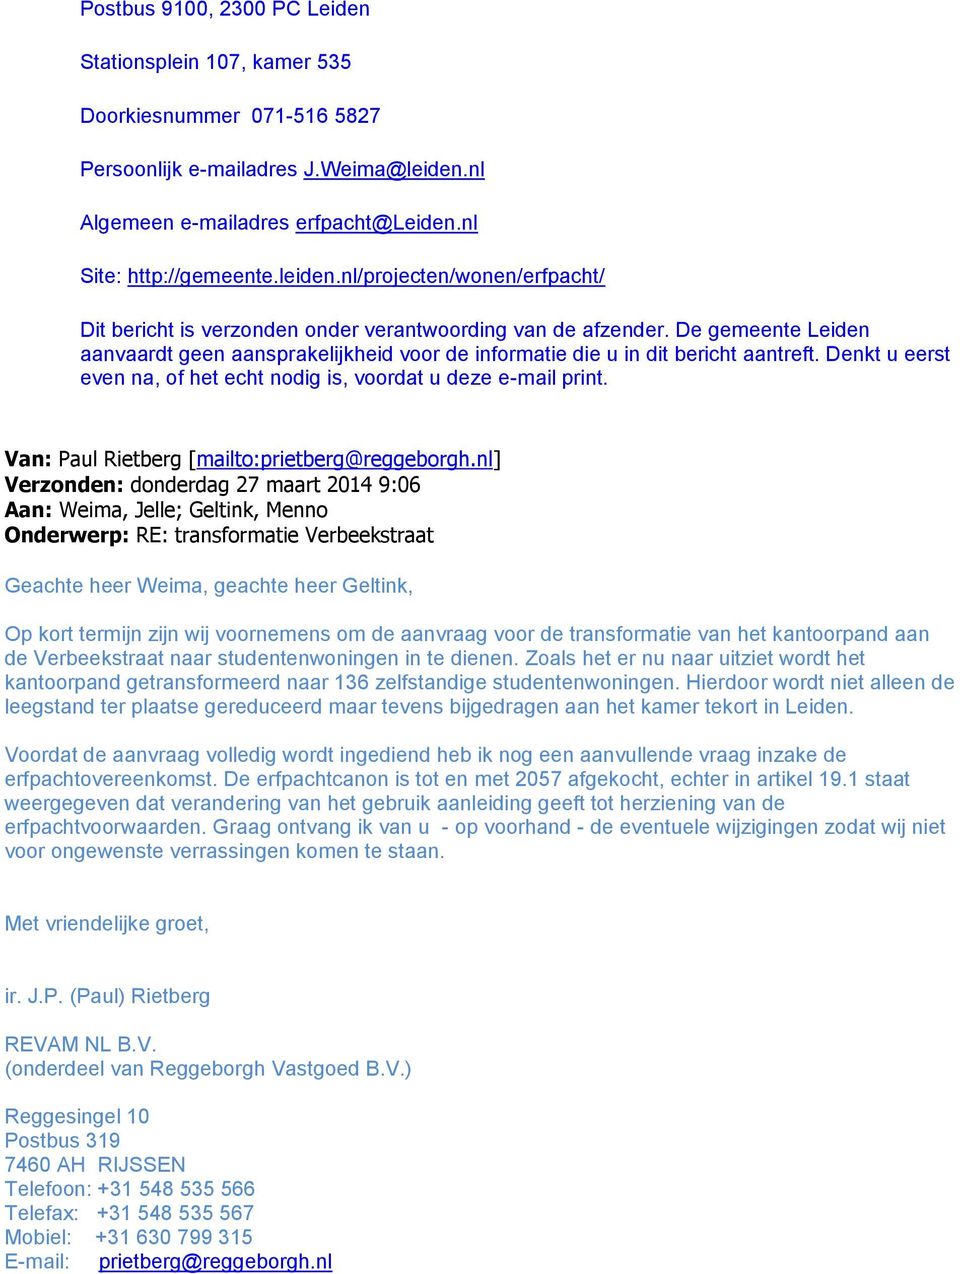 De gemeente Leiden aanvaardt geen aansprakelijkheid voor de informatie die u in dit bericht aantreft. Denkt u eerst even na, of het echt nodig is, voordat u deze e-mail print.